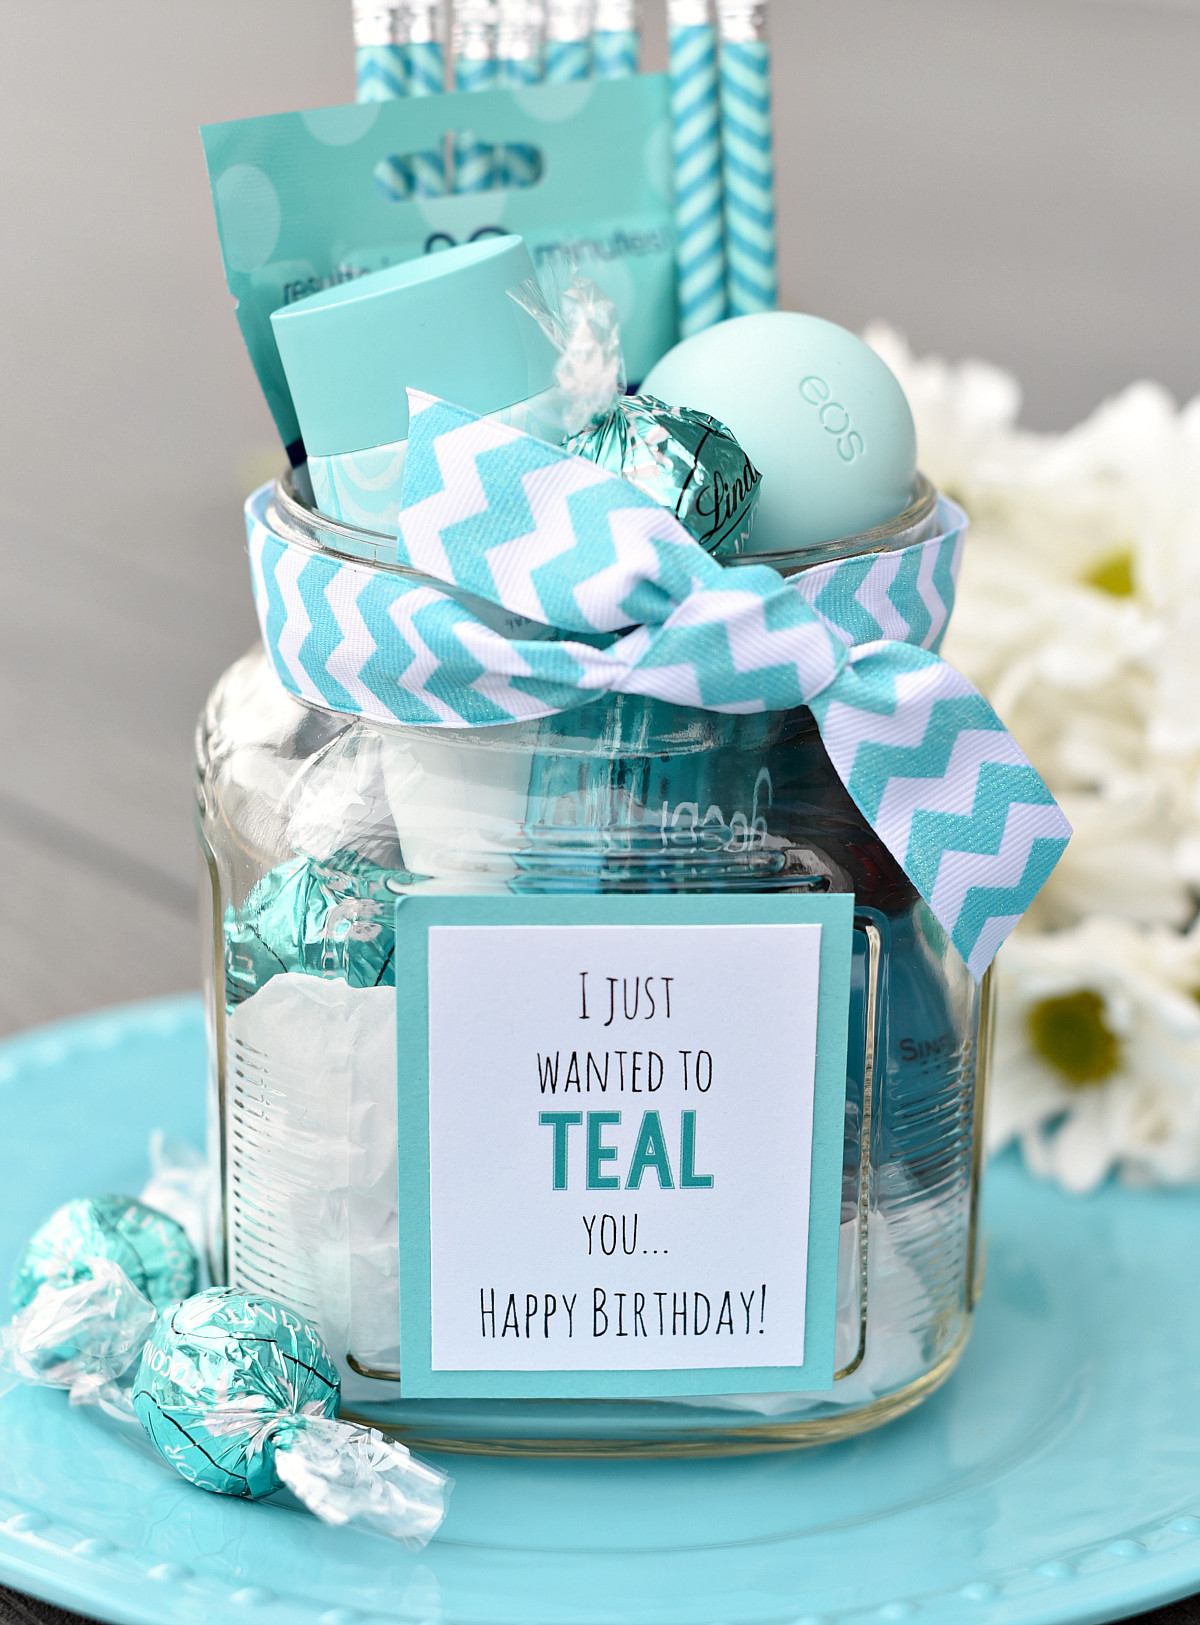 Creative Birthday Gift Ideas For Best Friend
 Teal Birthday Gift Idea for Friends – Fun Squared